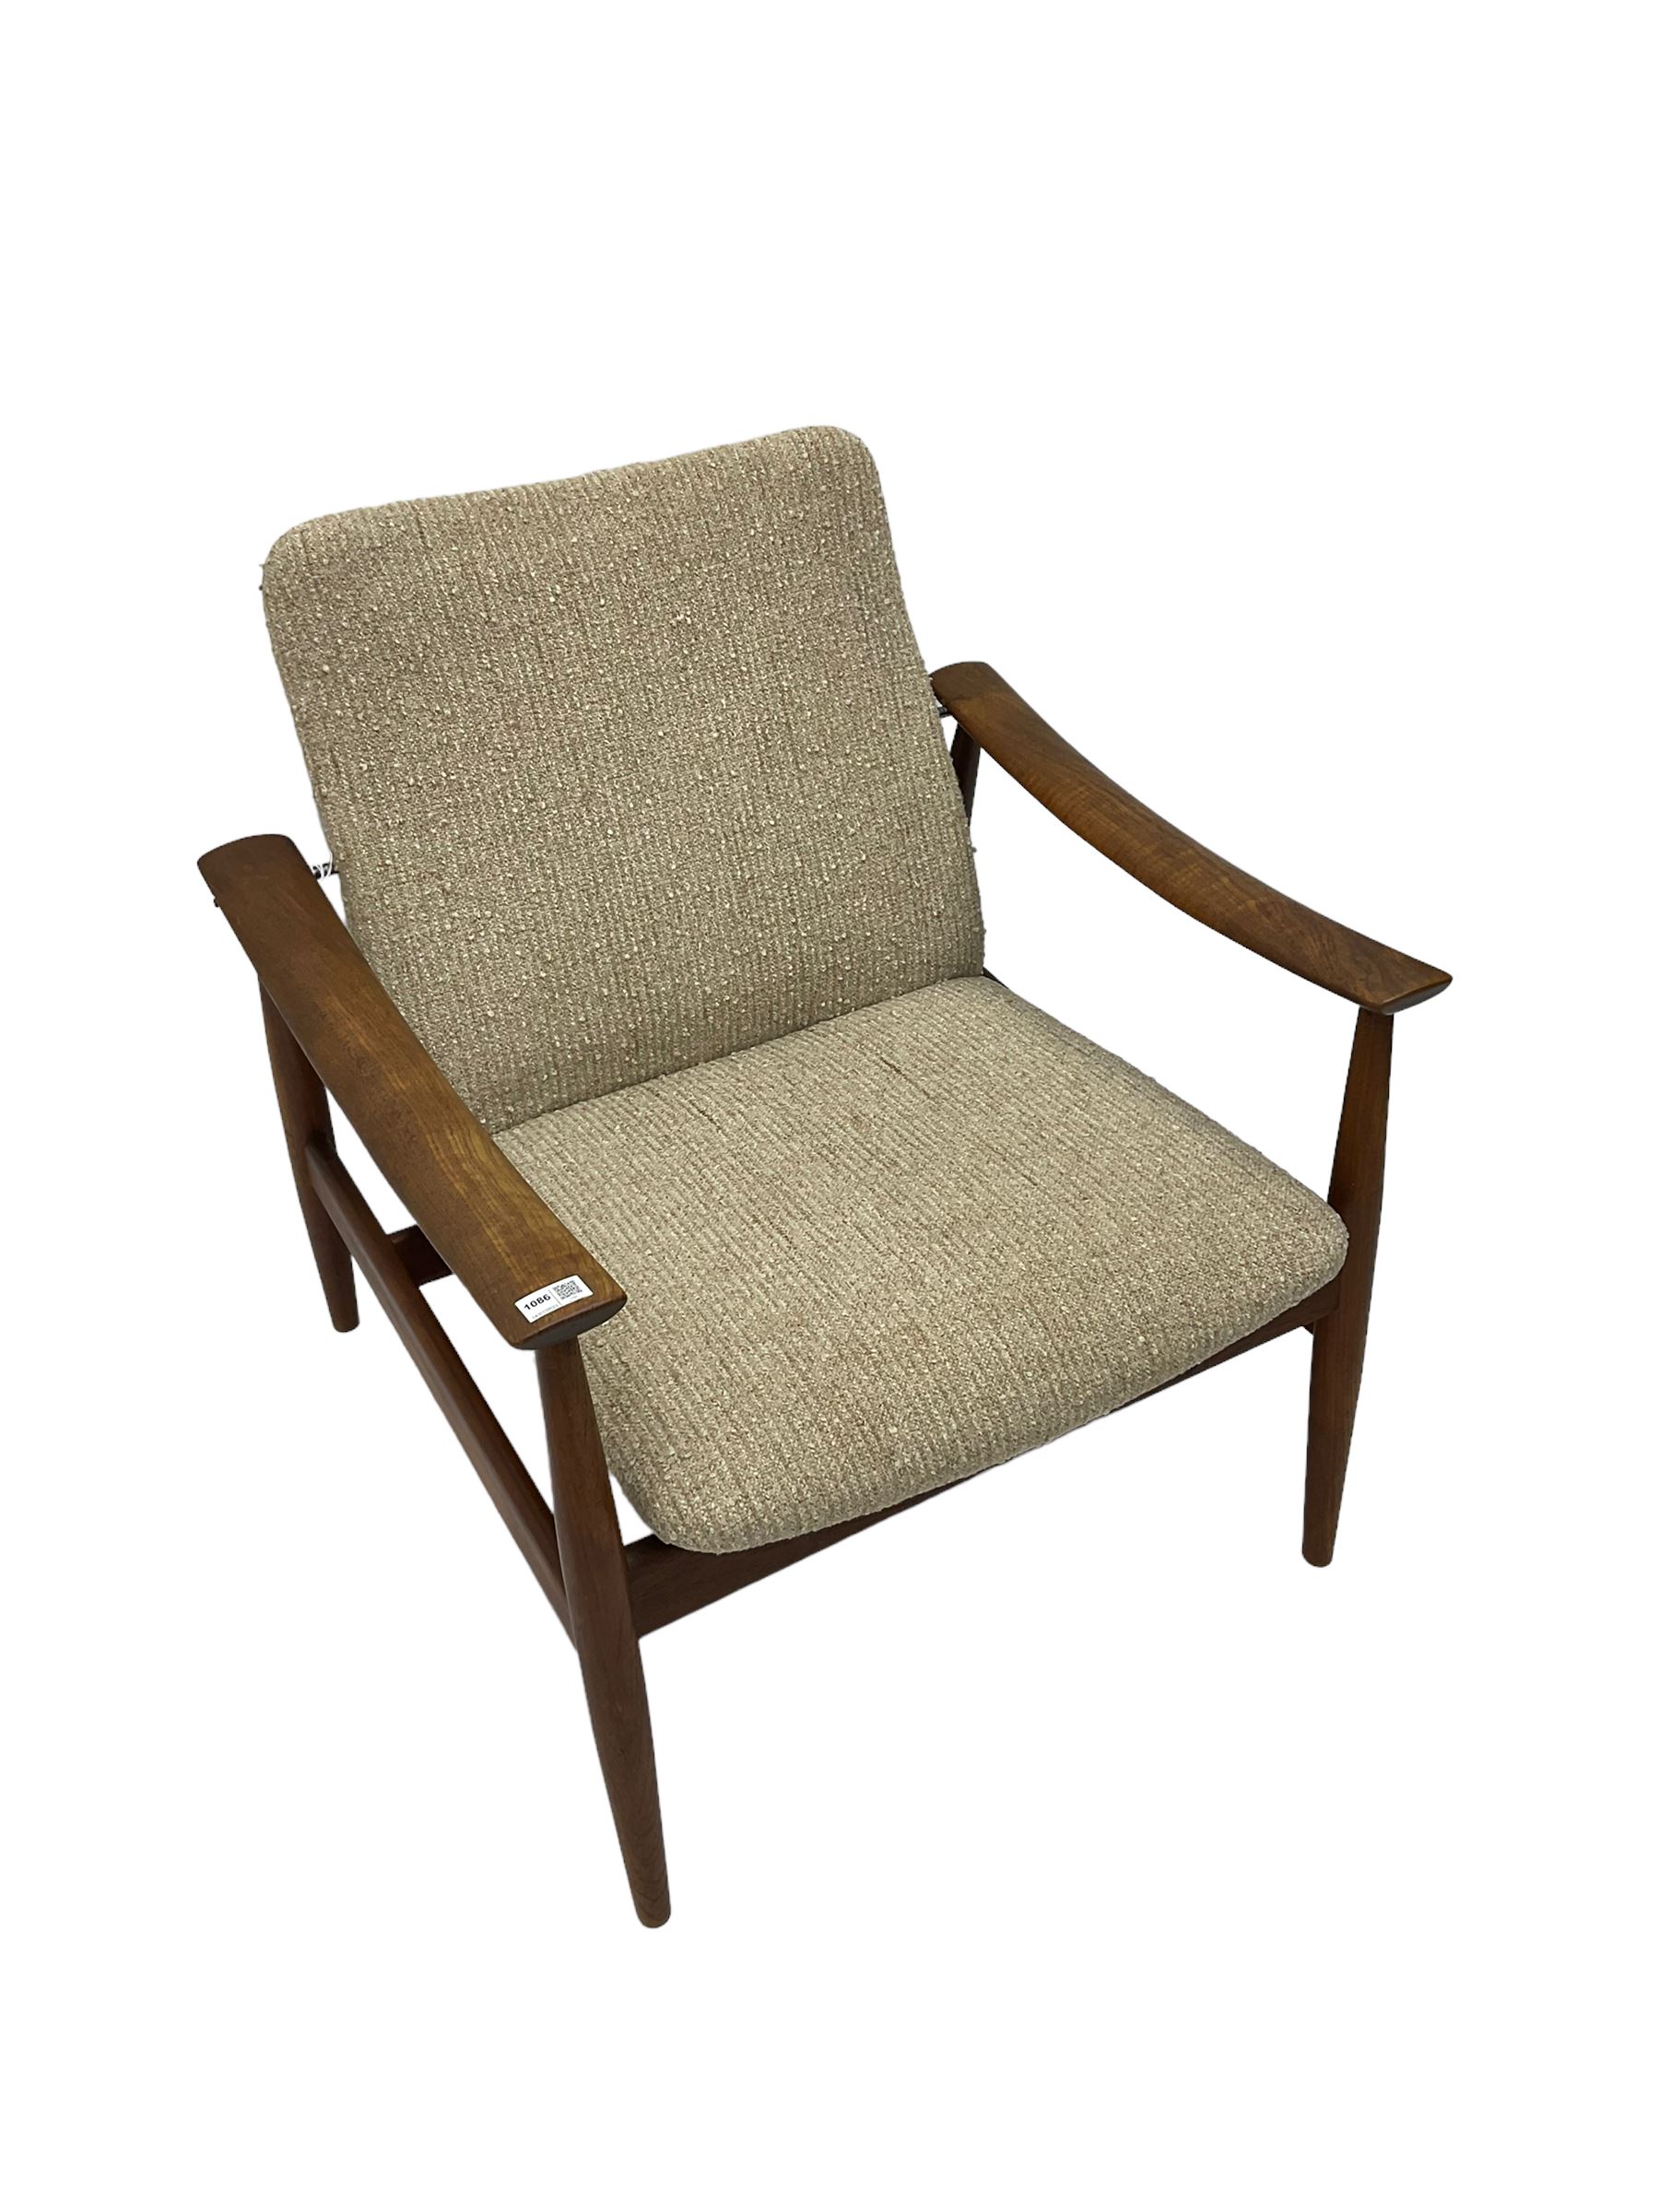 Finn Juhl for France & Son - 'model 138' mid-20th century teak easy chair upholstered in beige fabri - Image 13 of 14